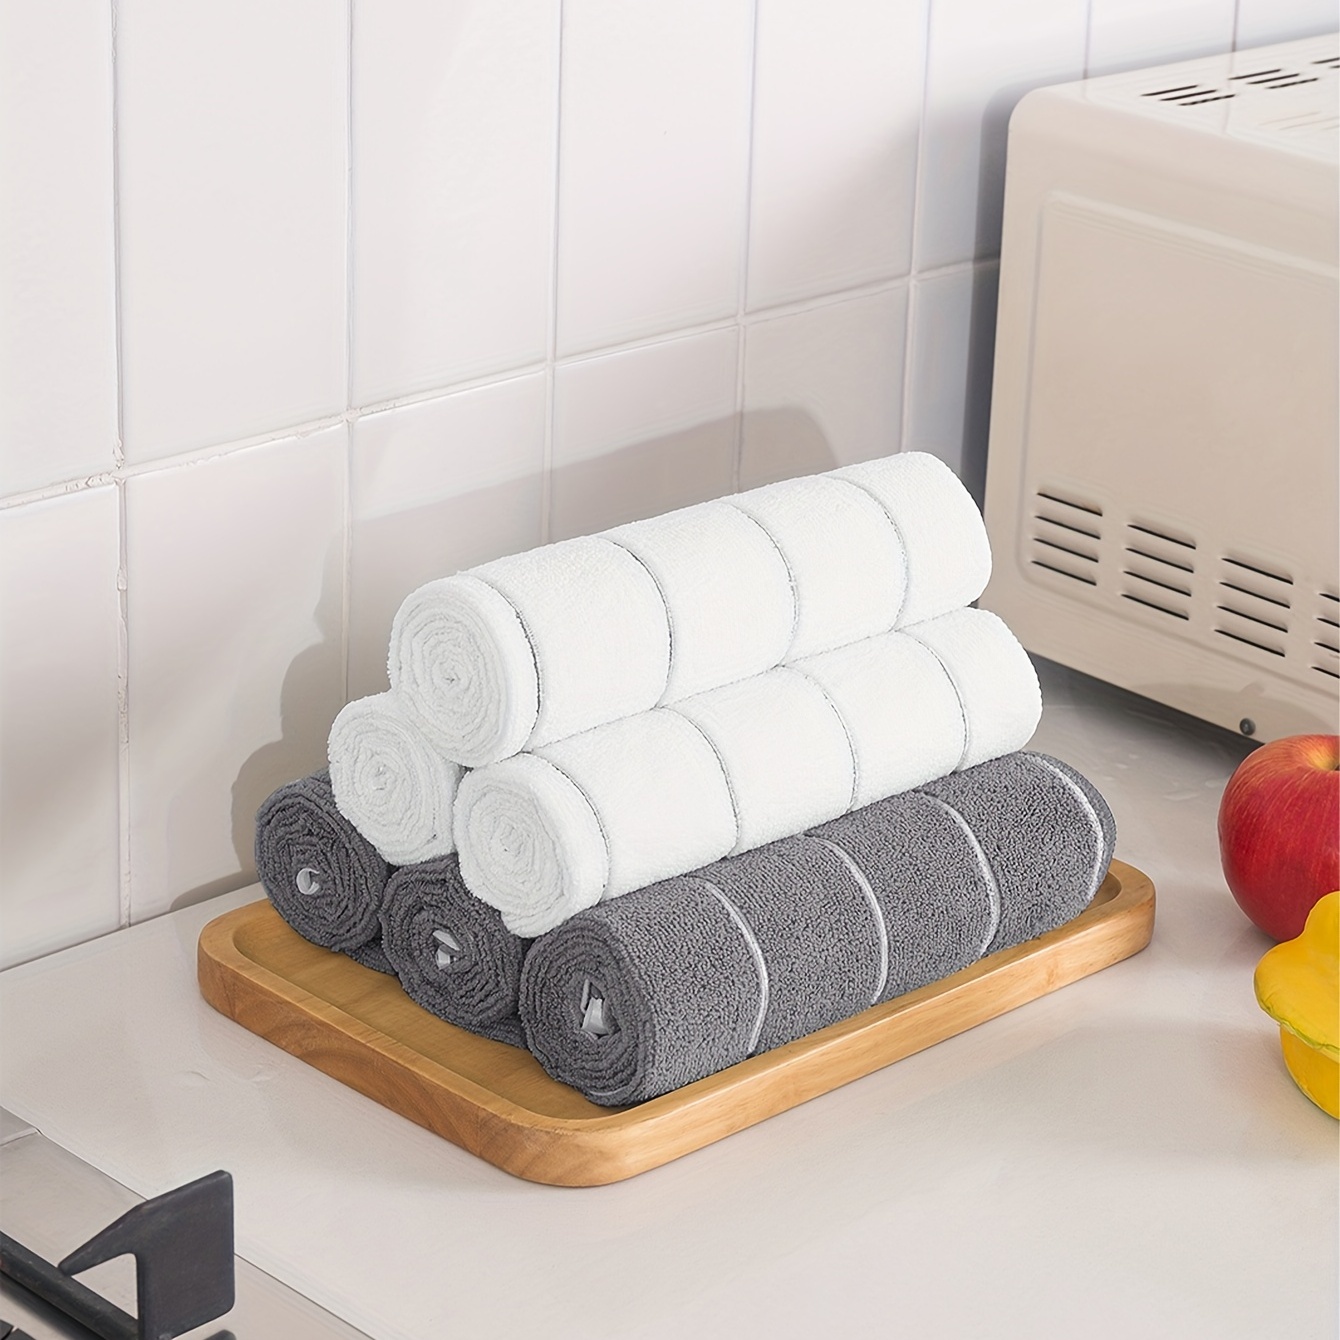 QWERBAM 994.1 in, 5 piezas/10 toallas pequeñas de microfibra gran  absorbente para baño, cocina, lavado, cara, piel, uso corporal para familia  (color